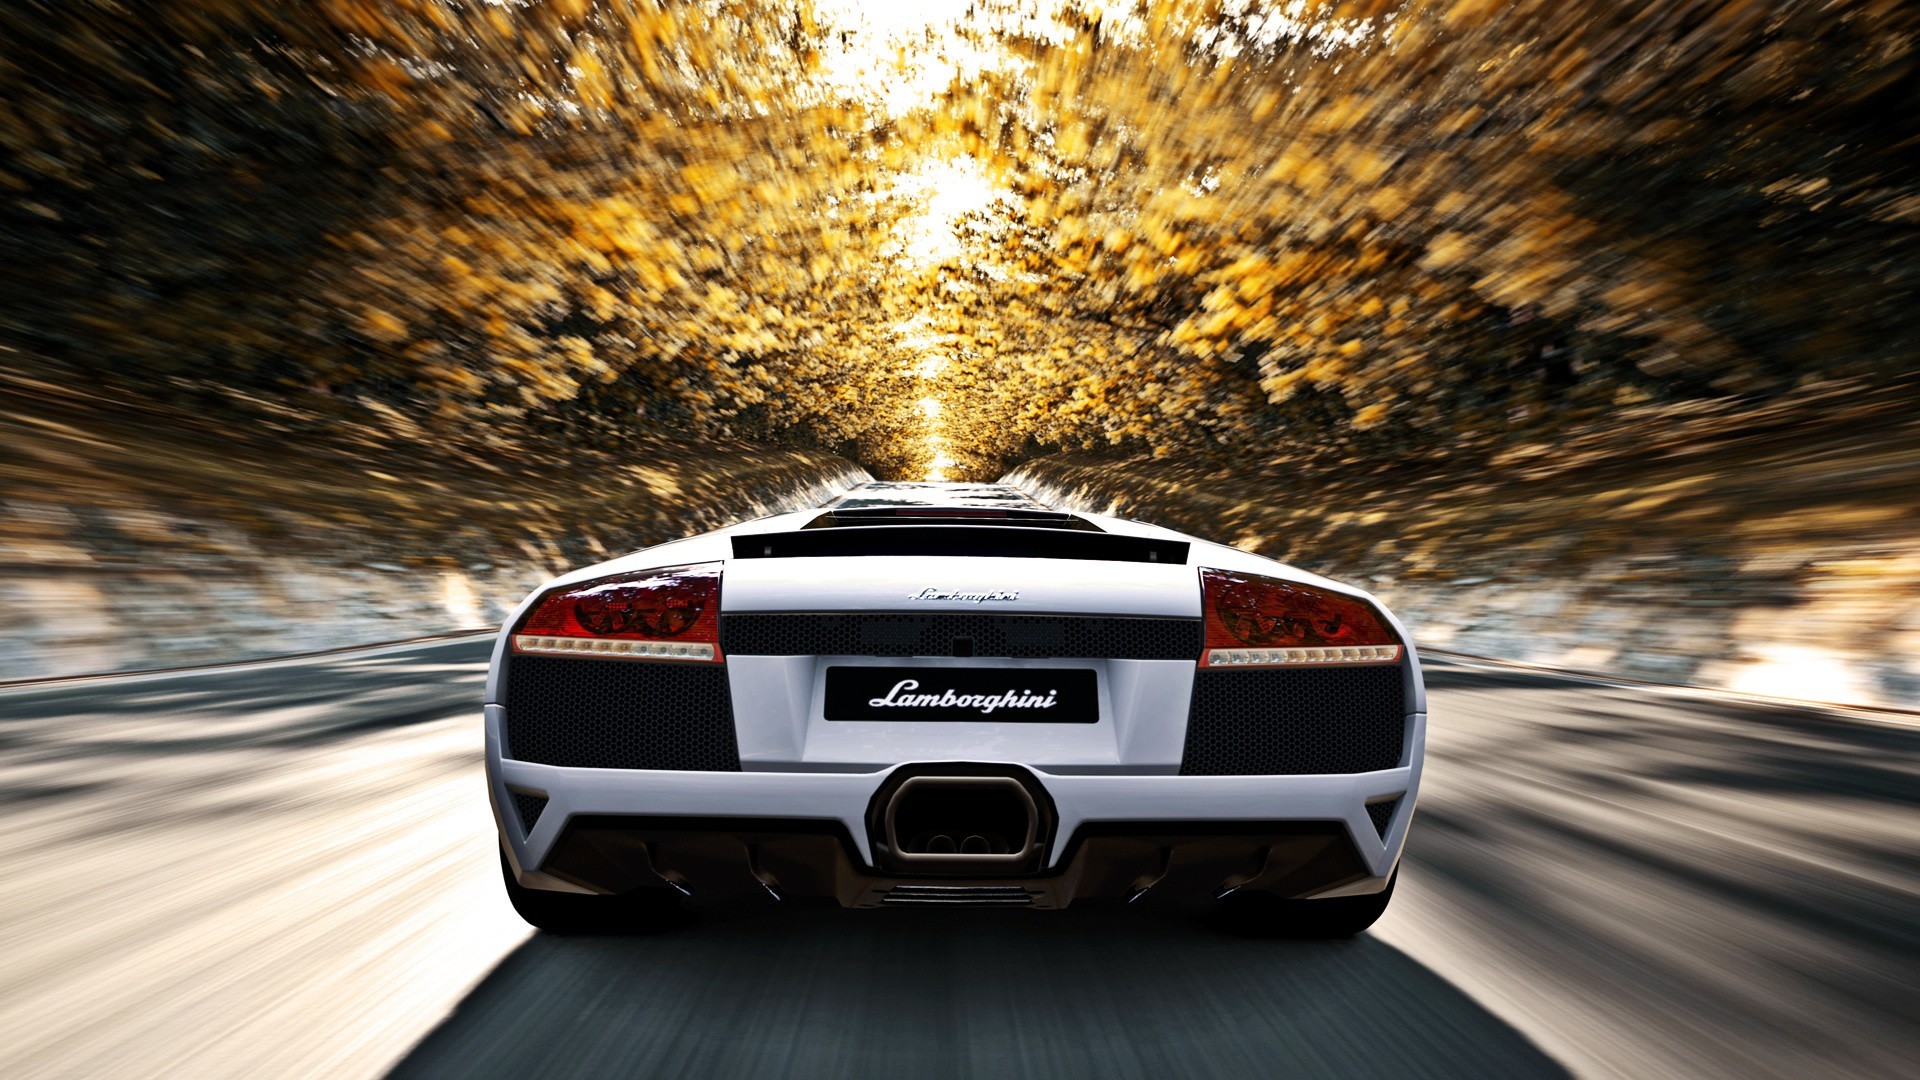 Lamborghini Murcielago Wallpapers